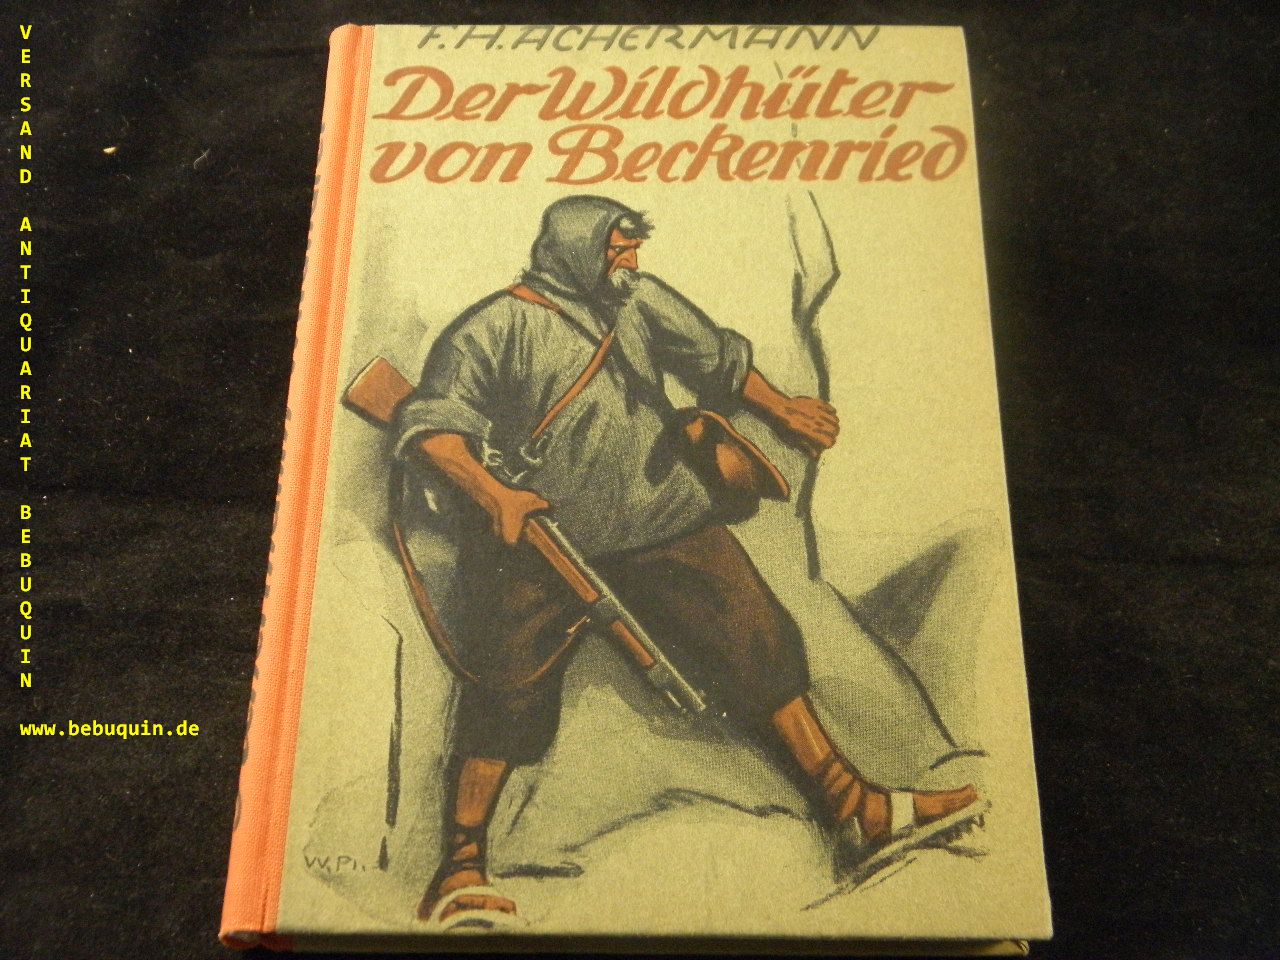 ACHERMANN, F.H.: - Der Wildhter von Beckenried. Ein Roman aus Nidwaldens letzten Tagen vor 1798.